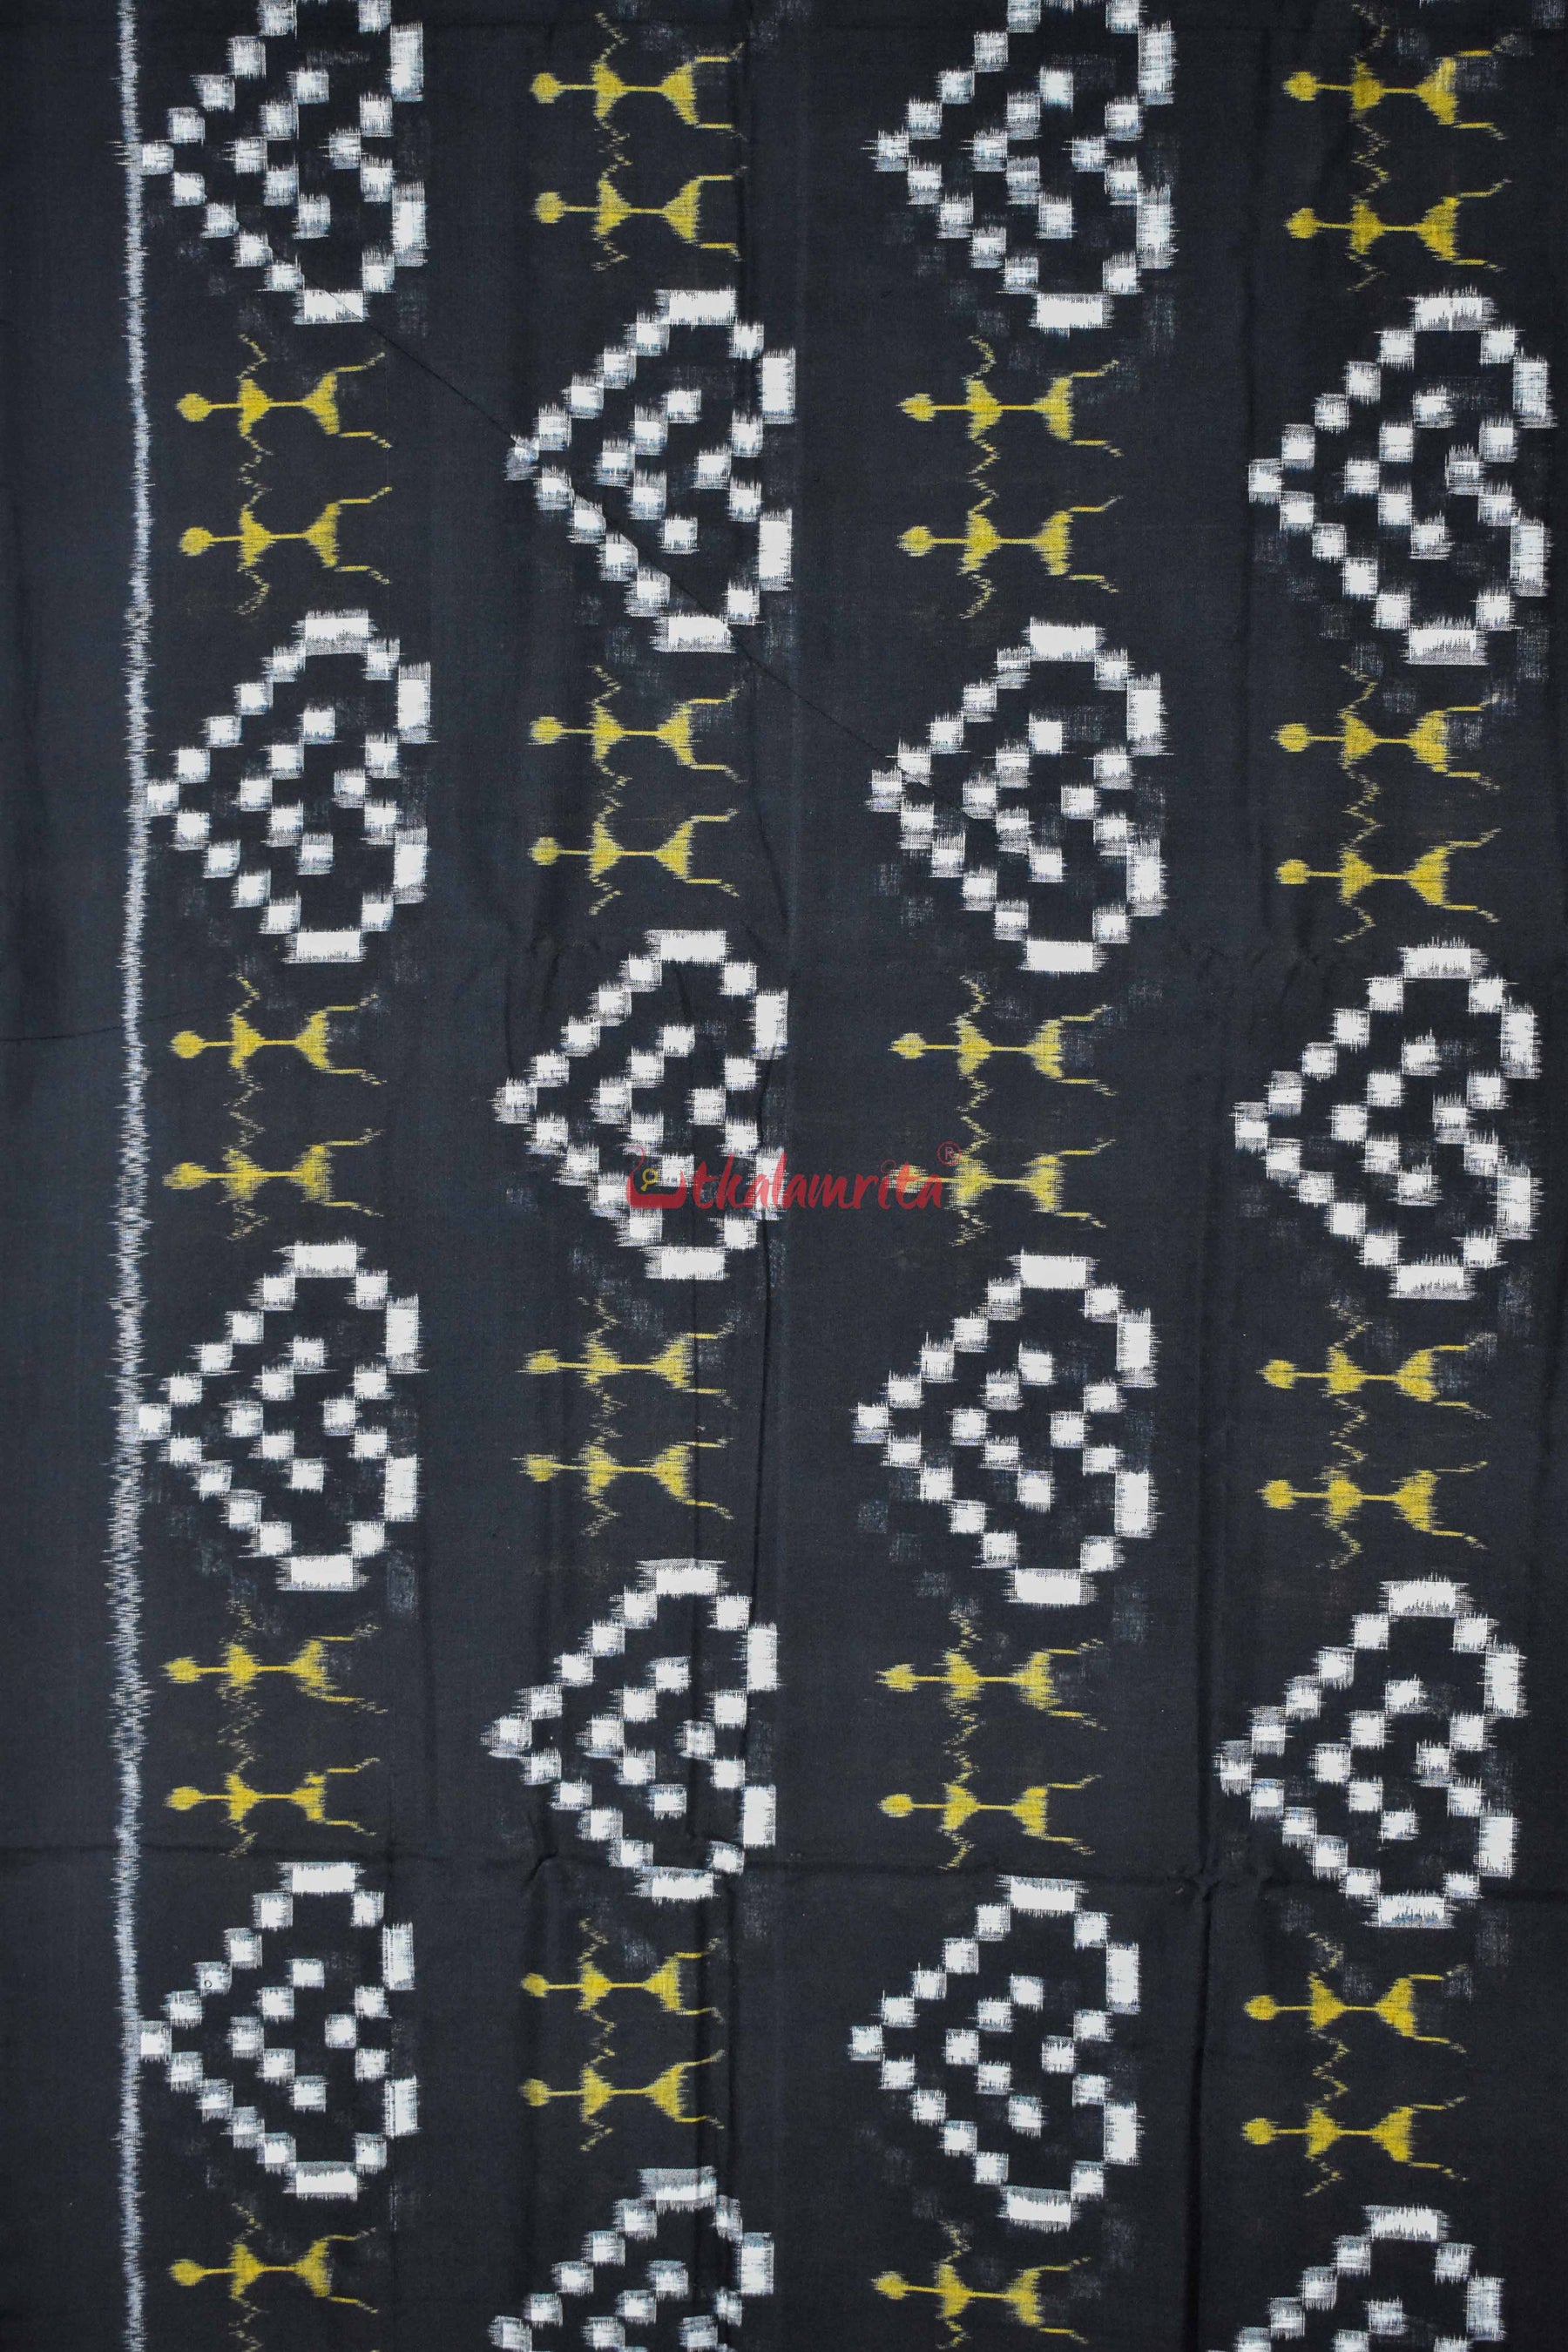 Big Black Hearts and Tribals (Fabric)